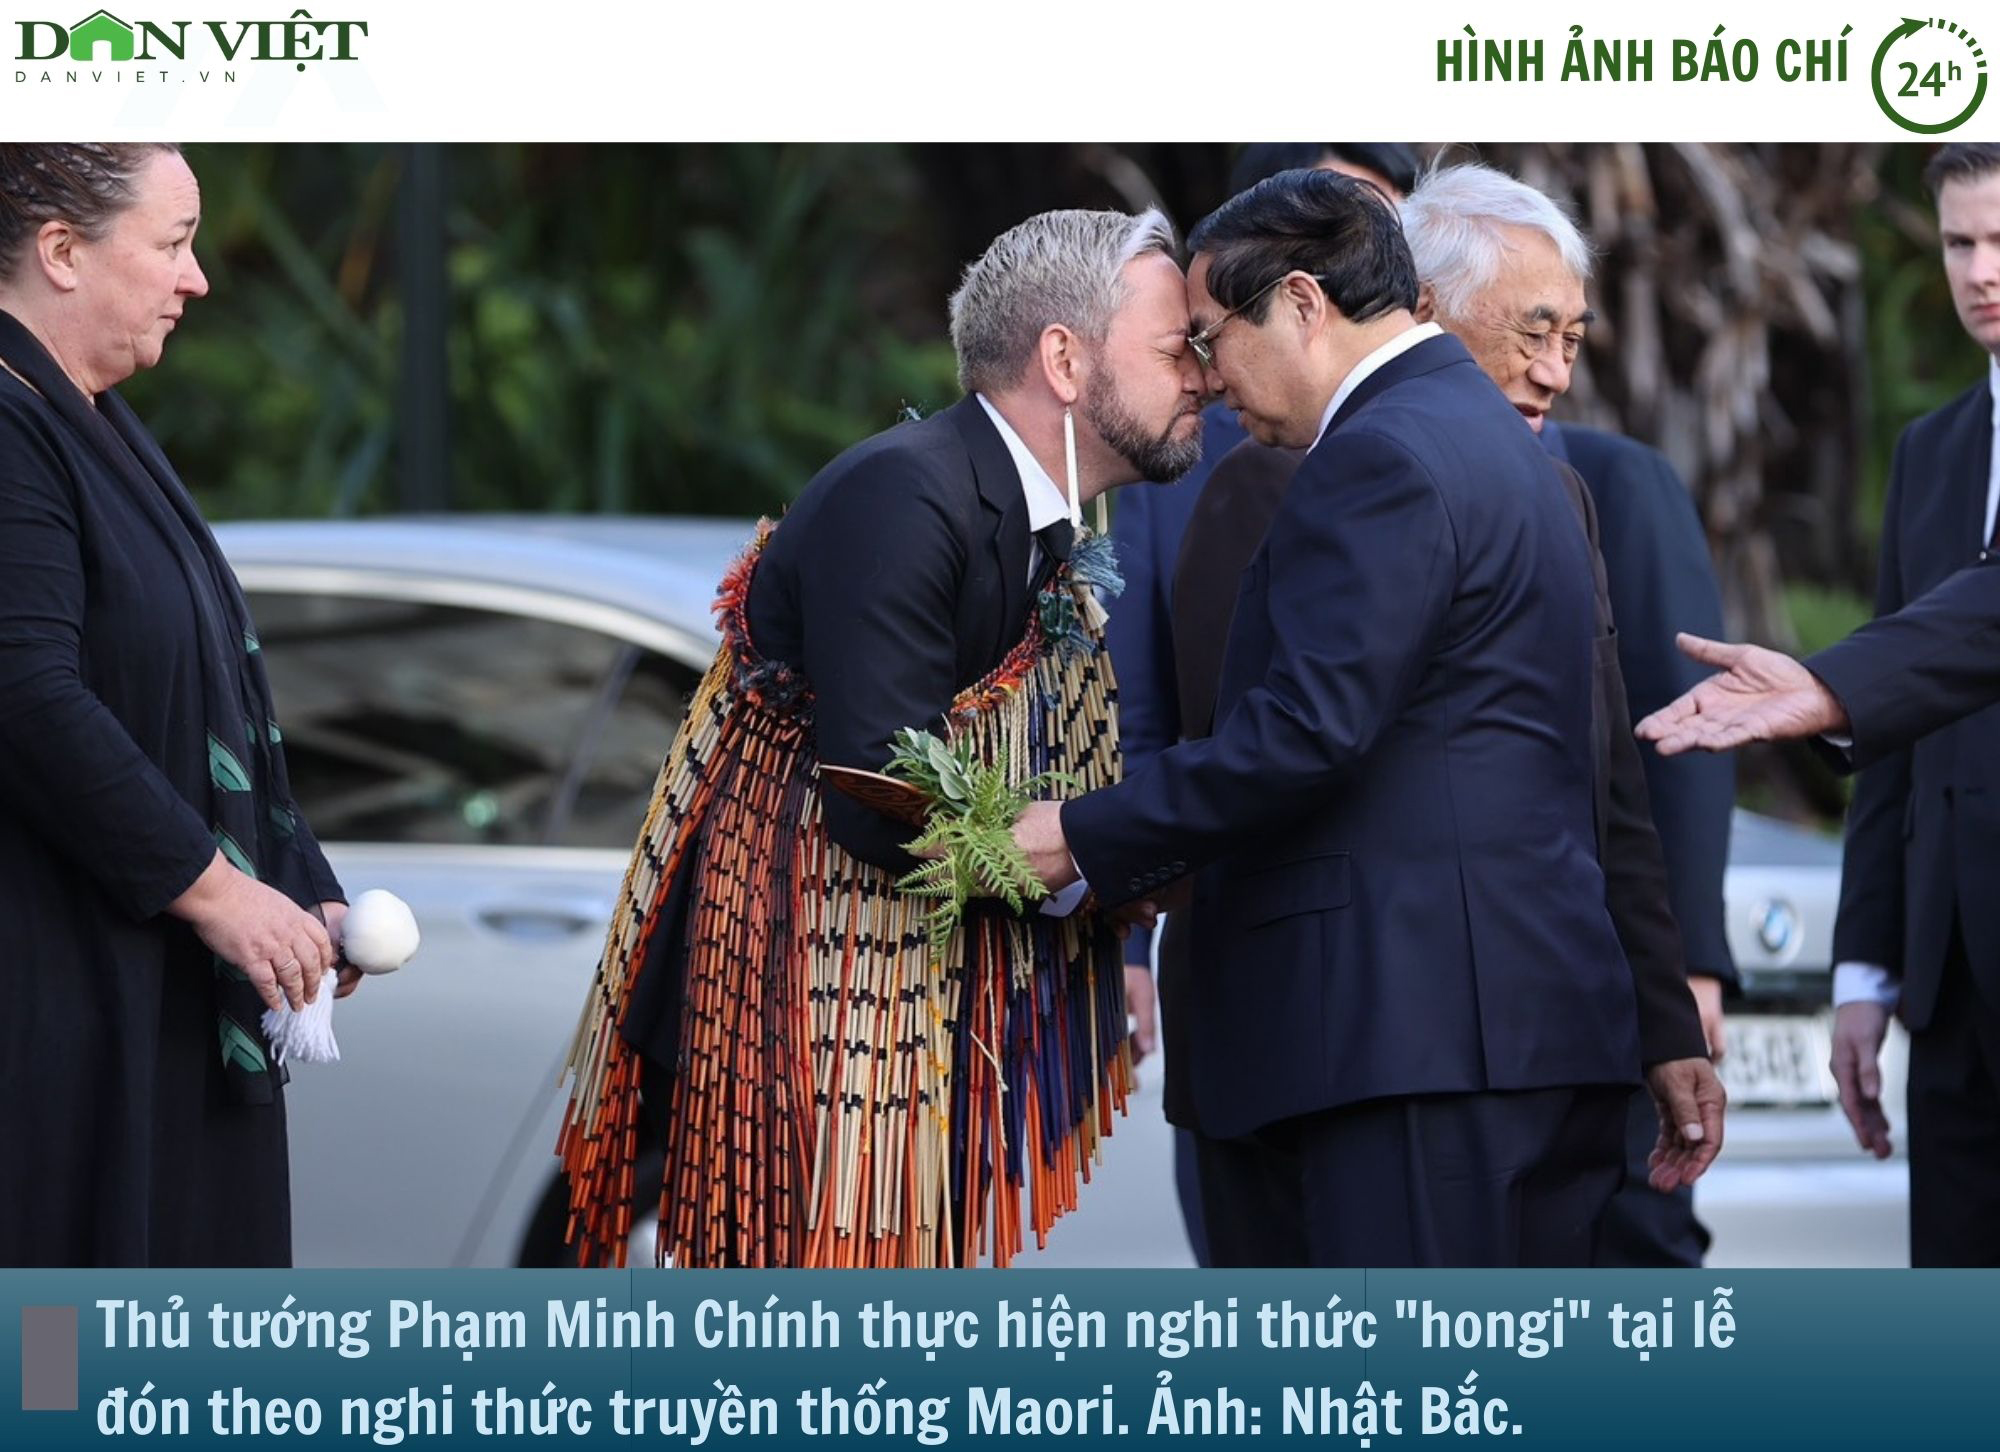 Hình ảnh báo chí 24h: New Zealand bắn 19 phát đại bác chào mừng Thủ tướng Phạm Minh Chính- Ảnh 1.